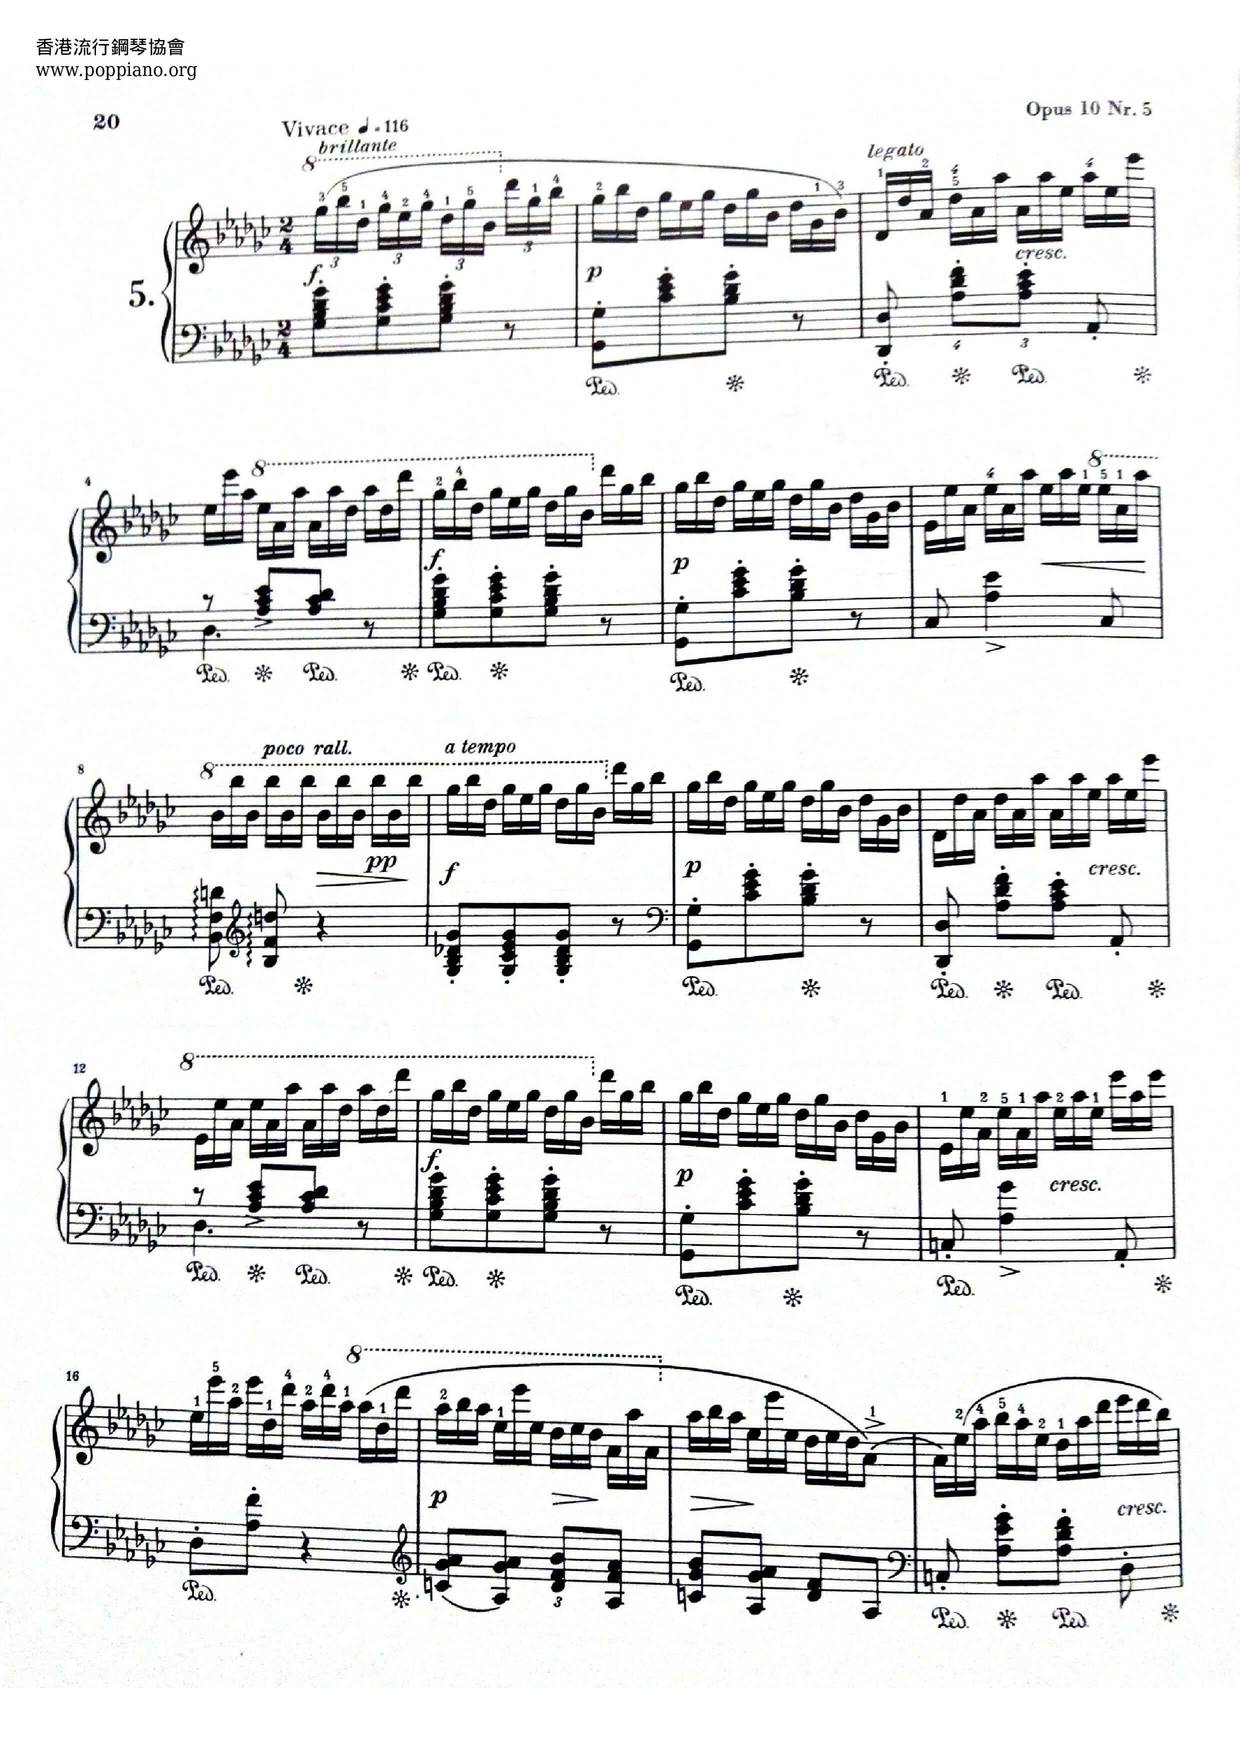 Chopin Etude Op. 10, No. 5ピアノ譜